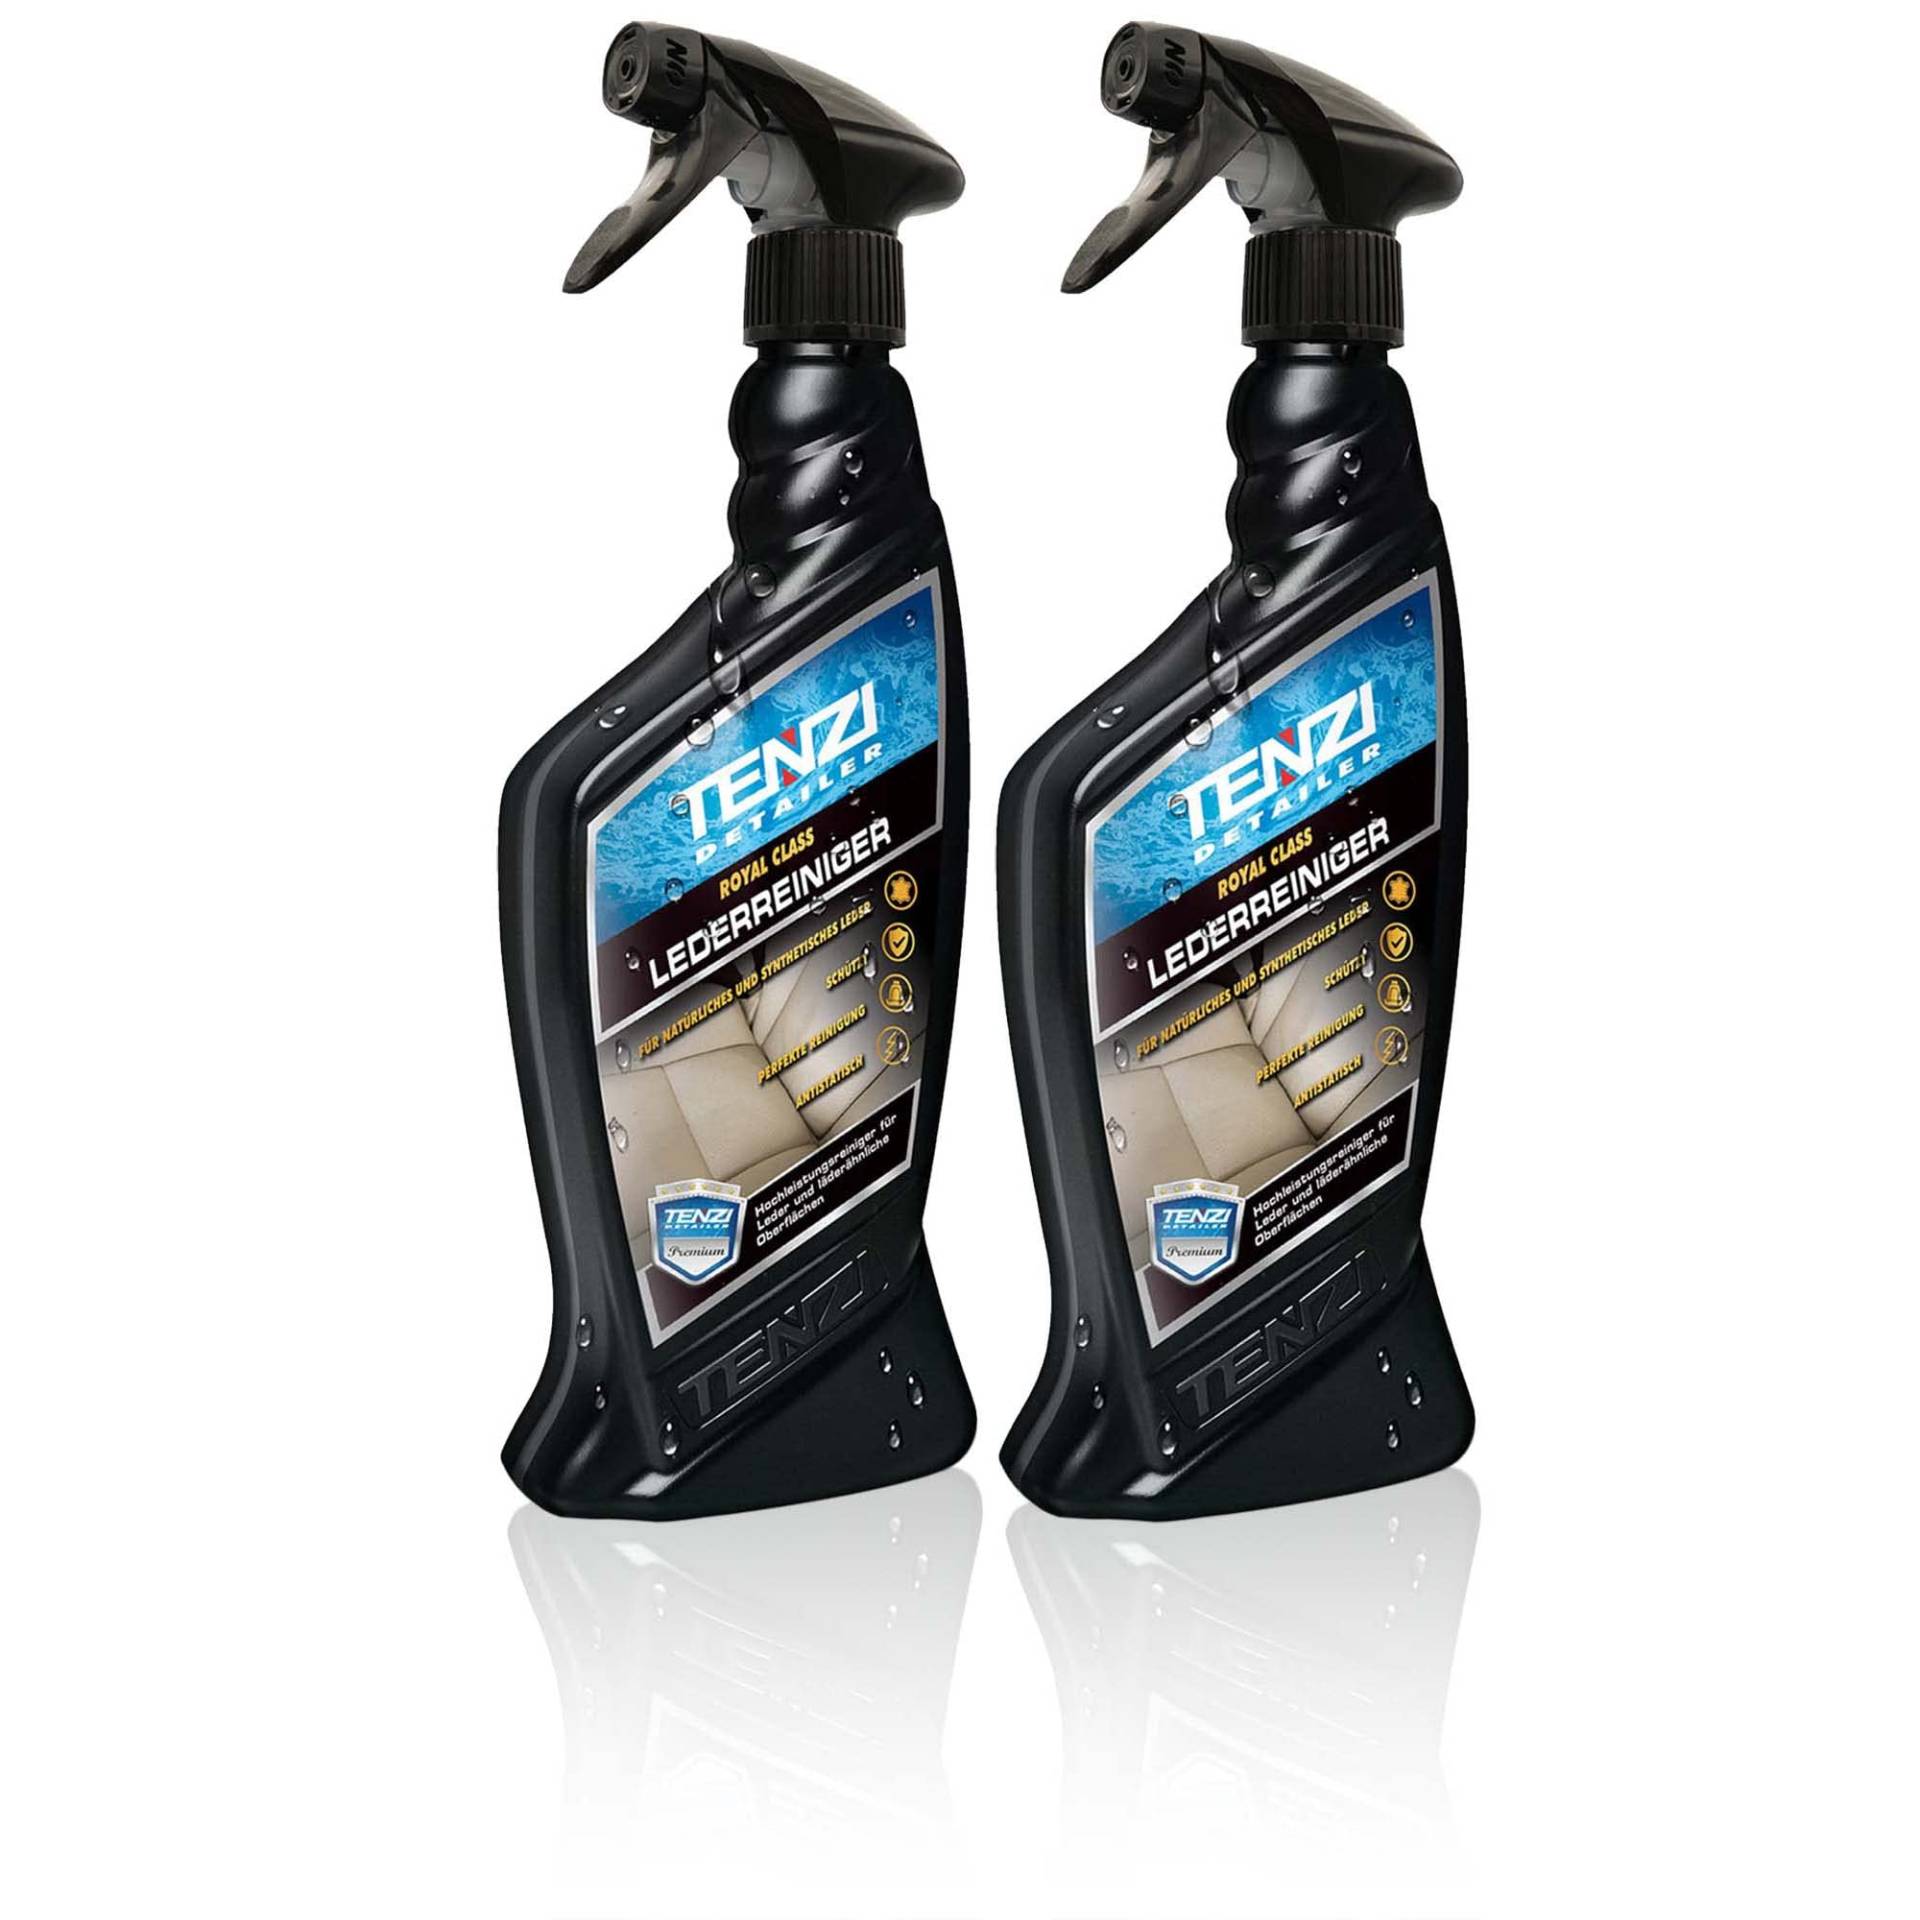 TENZI 2X Premium Lederreiniger (600ml) Auto & Motorrad - Geruchsneutral & für stark verschmutzte Oberflächen, Lederpflege, Reinigung, Autopflege Innenraum, Innenraumreiniger Spray Leder, Sitzreiniger von TENZI